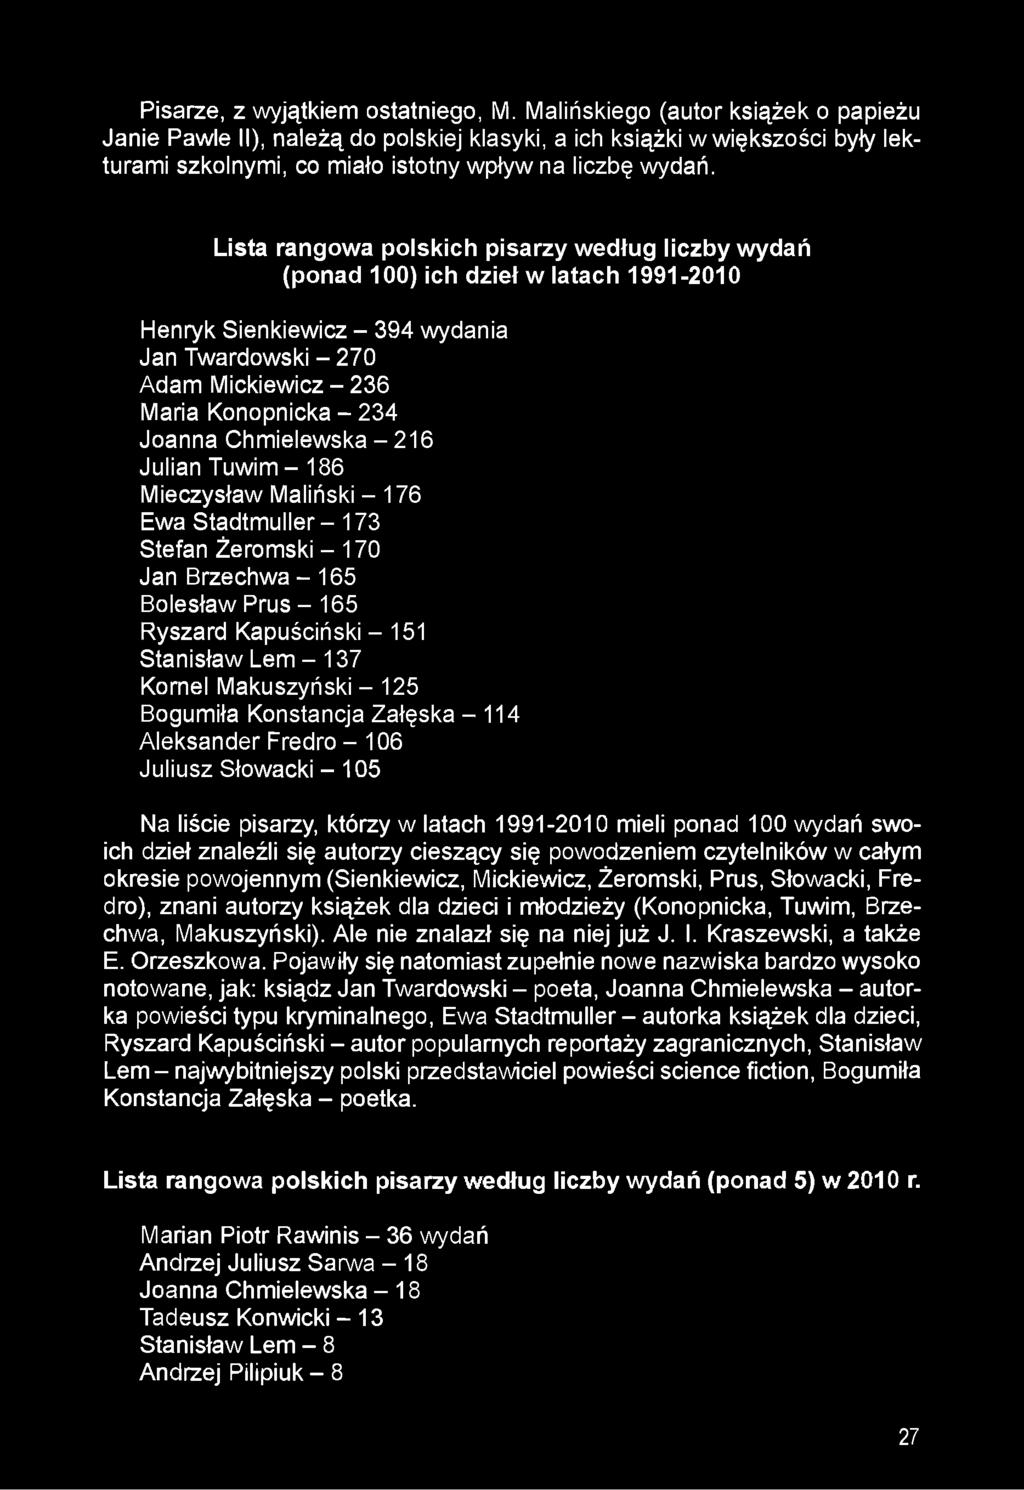 Lista rangowa polskich pisarzy według iiczby wydań (ponad 100) ich dzieł w latach 1991-2010 Henryk Sienkiewicz - 394 wydania Jan Twardowski - 270 Adam Mickiewicz - 236 Maria Konopnicka - 234 Joanna